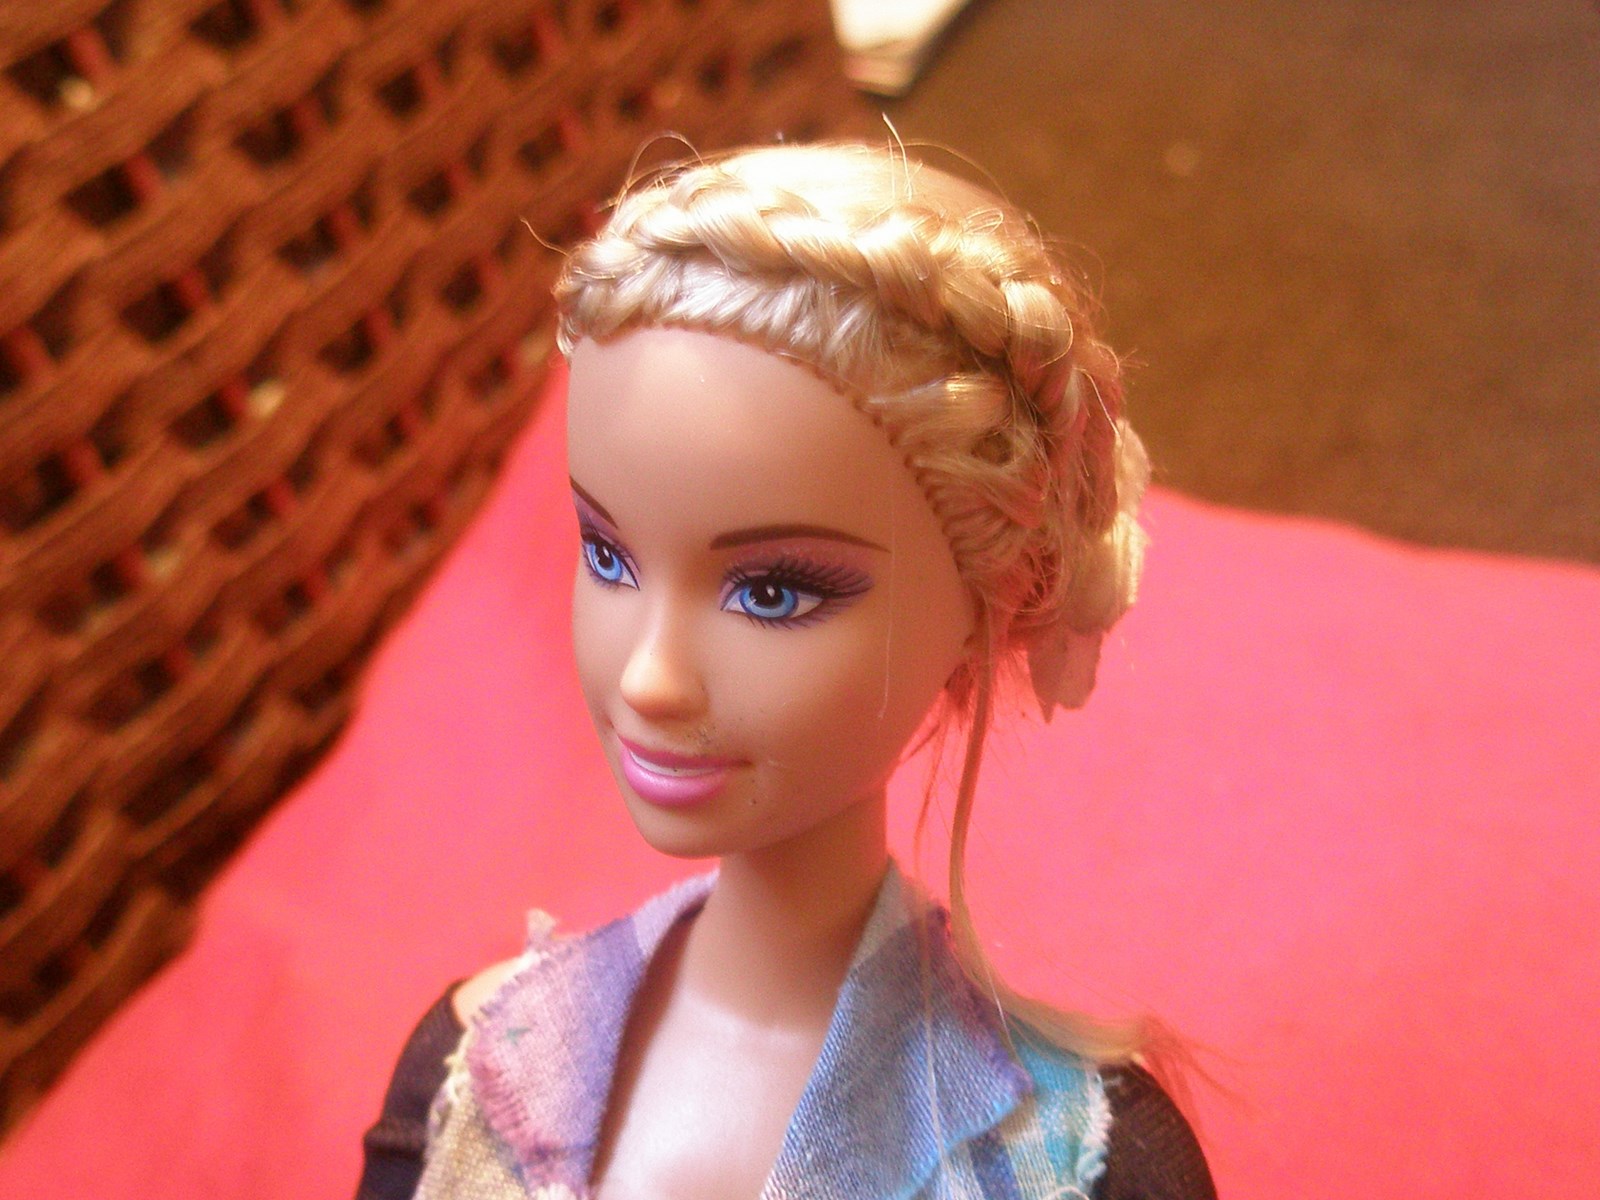 La coiffure de cette Barbie noire provoque une vague d'indignation